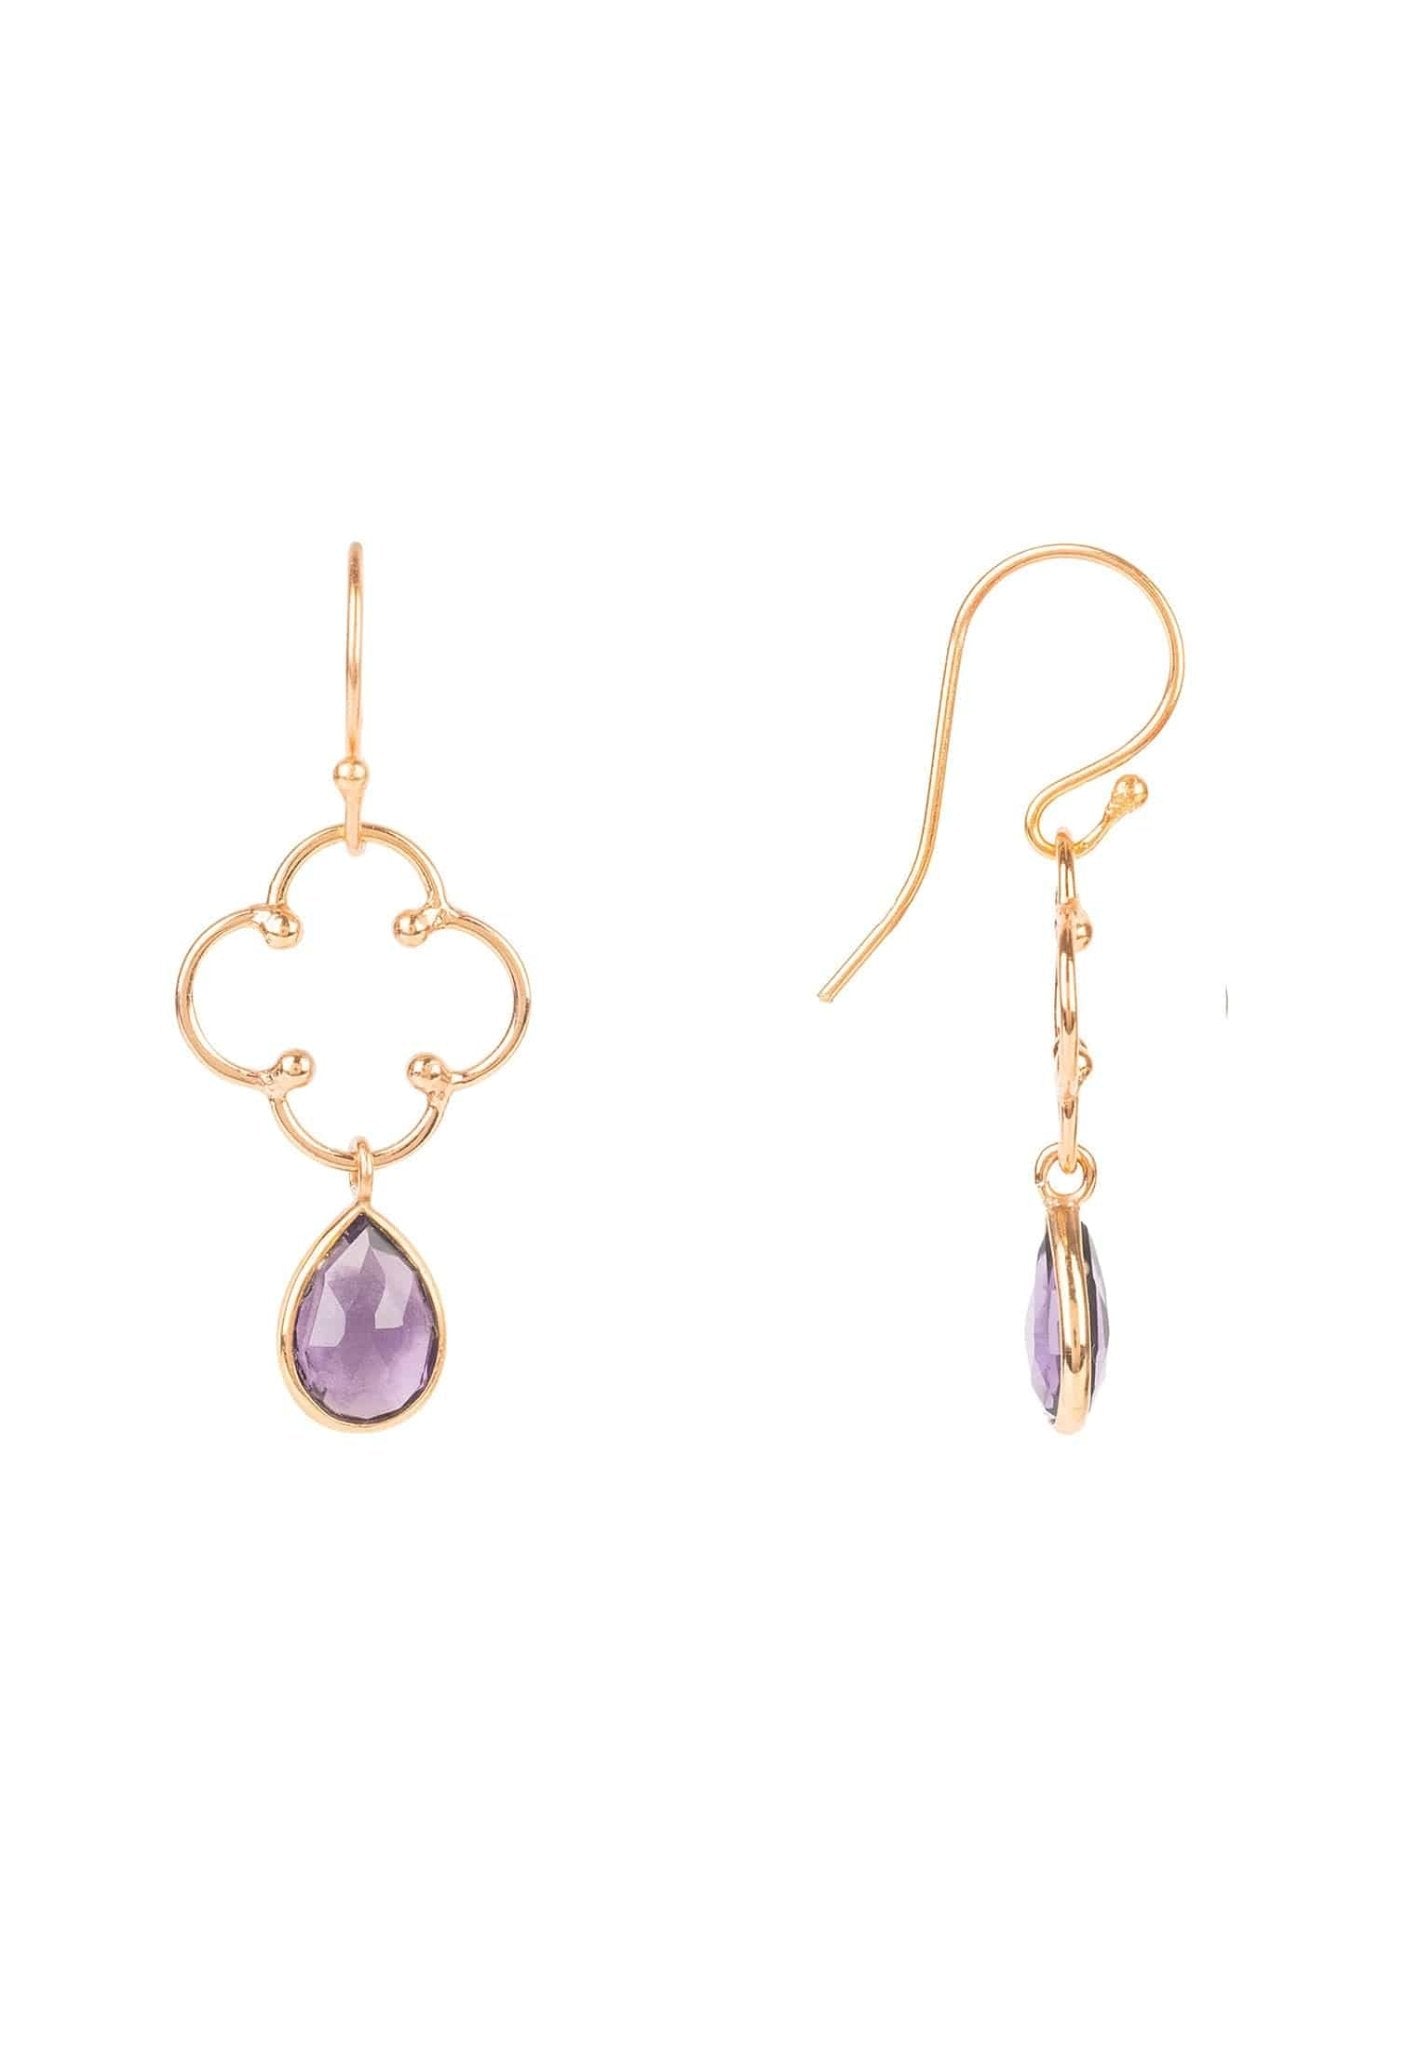 Open Clover Gemstone Drop Earrings Rosegold Amethyst Hydro - LATELITA Earrings